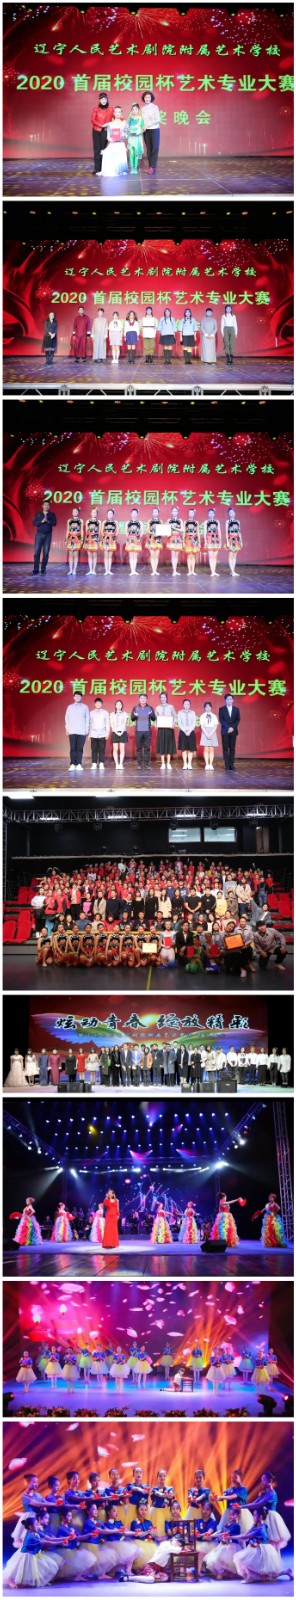 2021年辽宁人民艺术剧院附属艺术学校招生简章